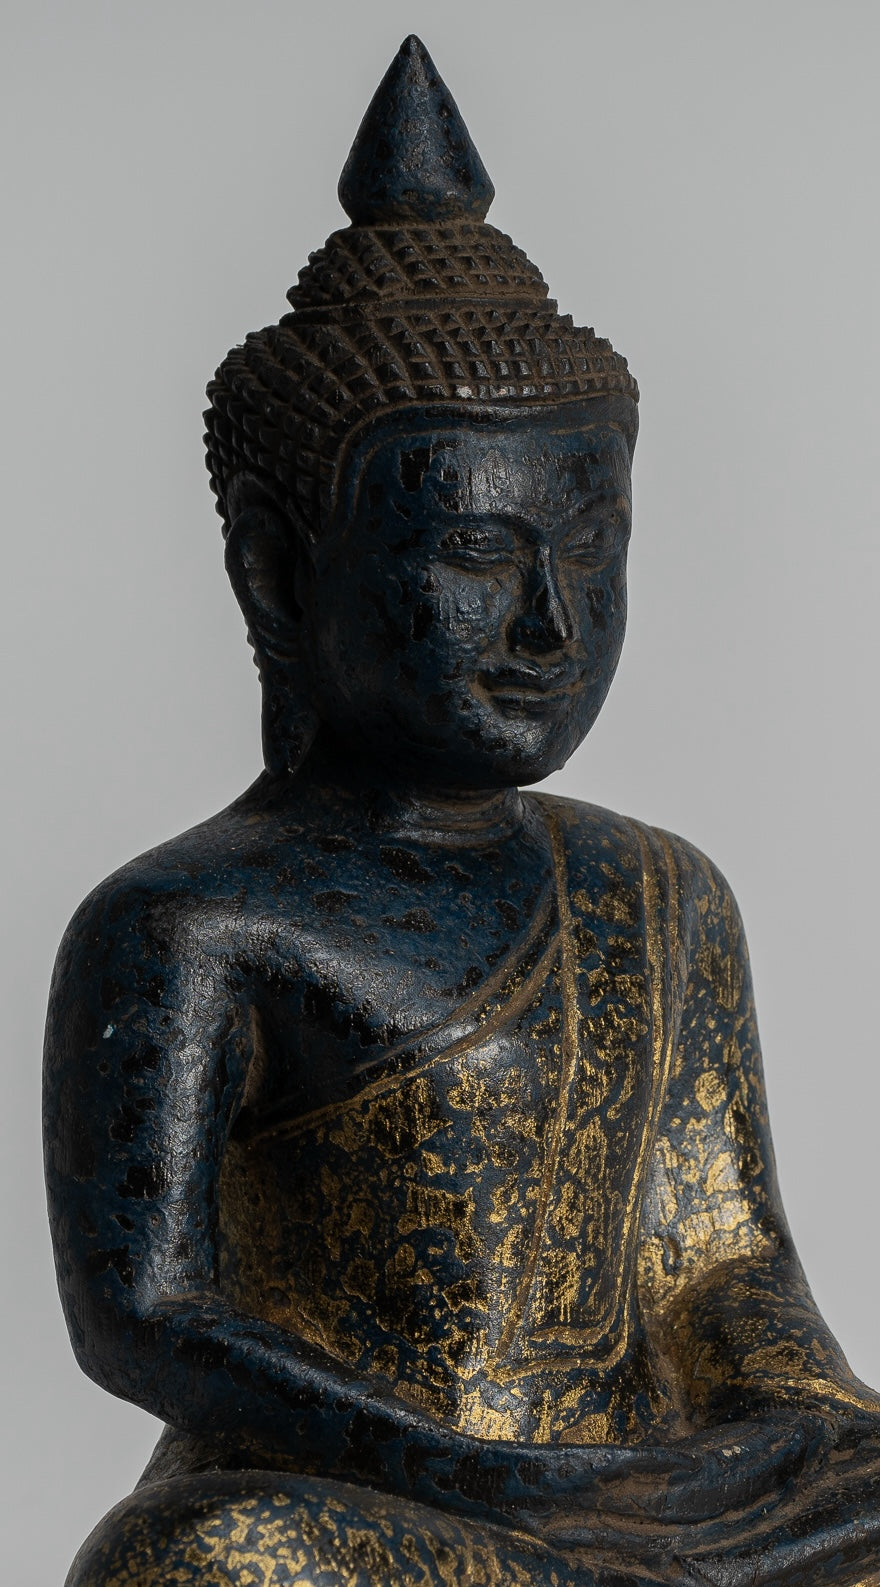 Brass Dancing Shiva Statue, 1.75 Inches Tall: The Buddha Garden